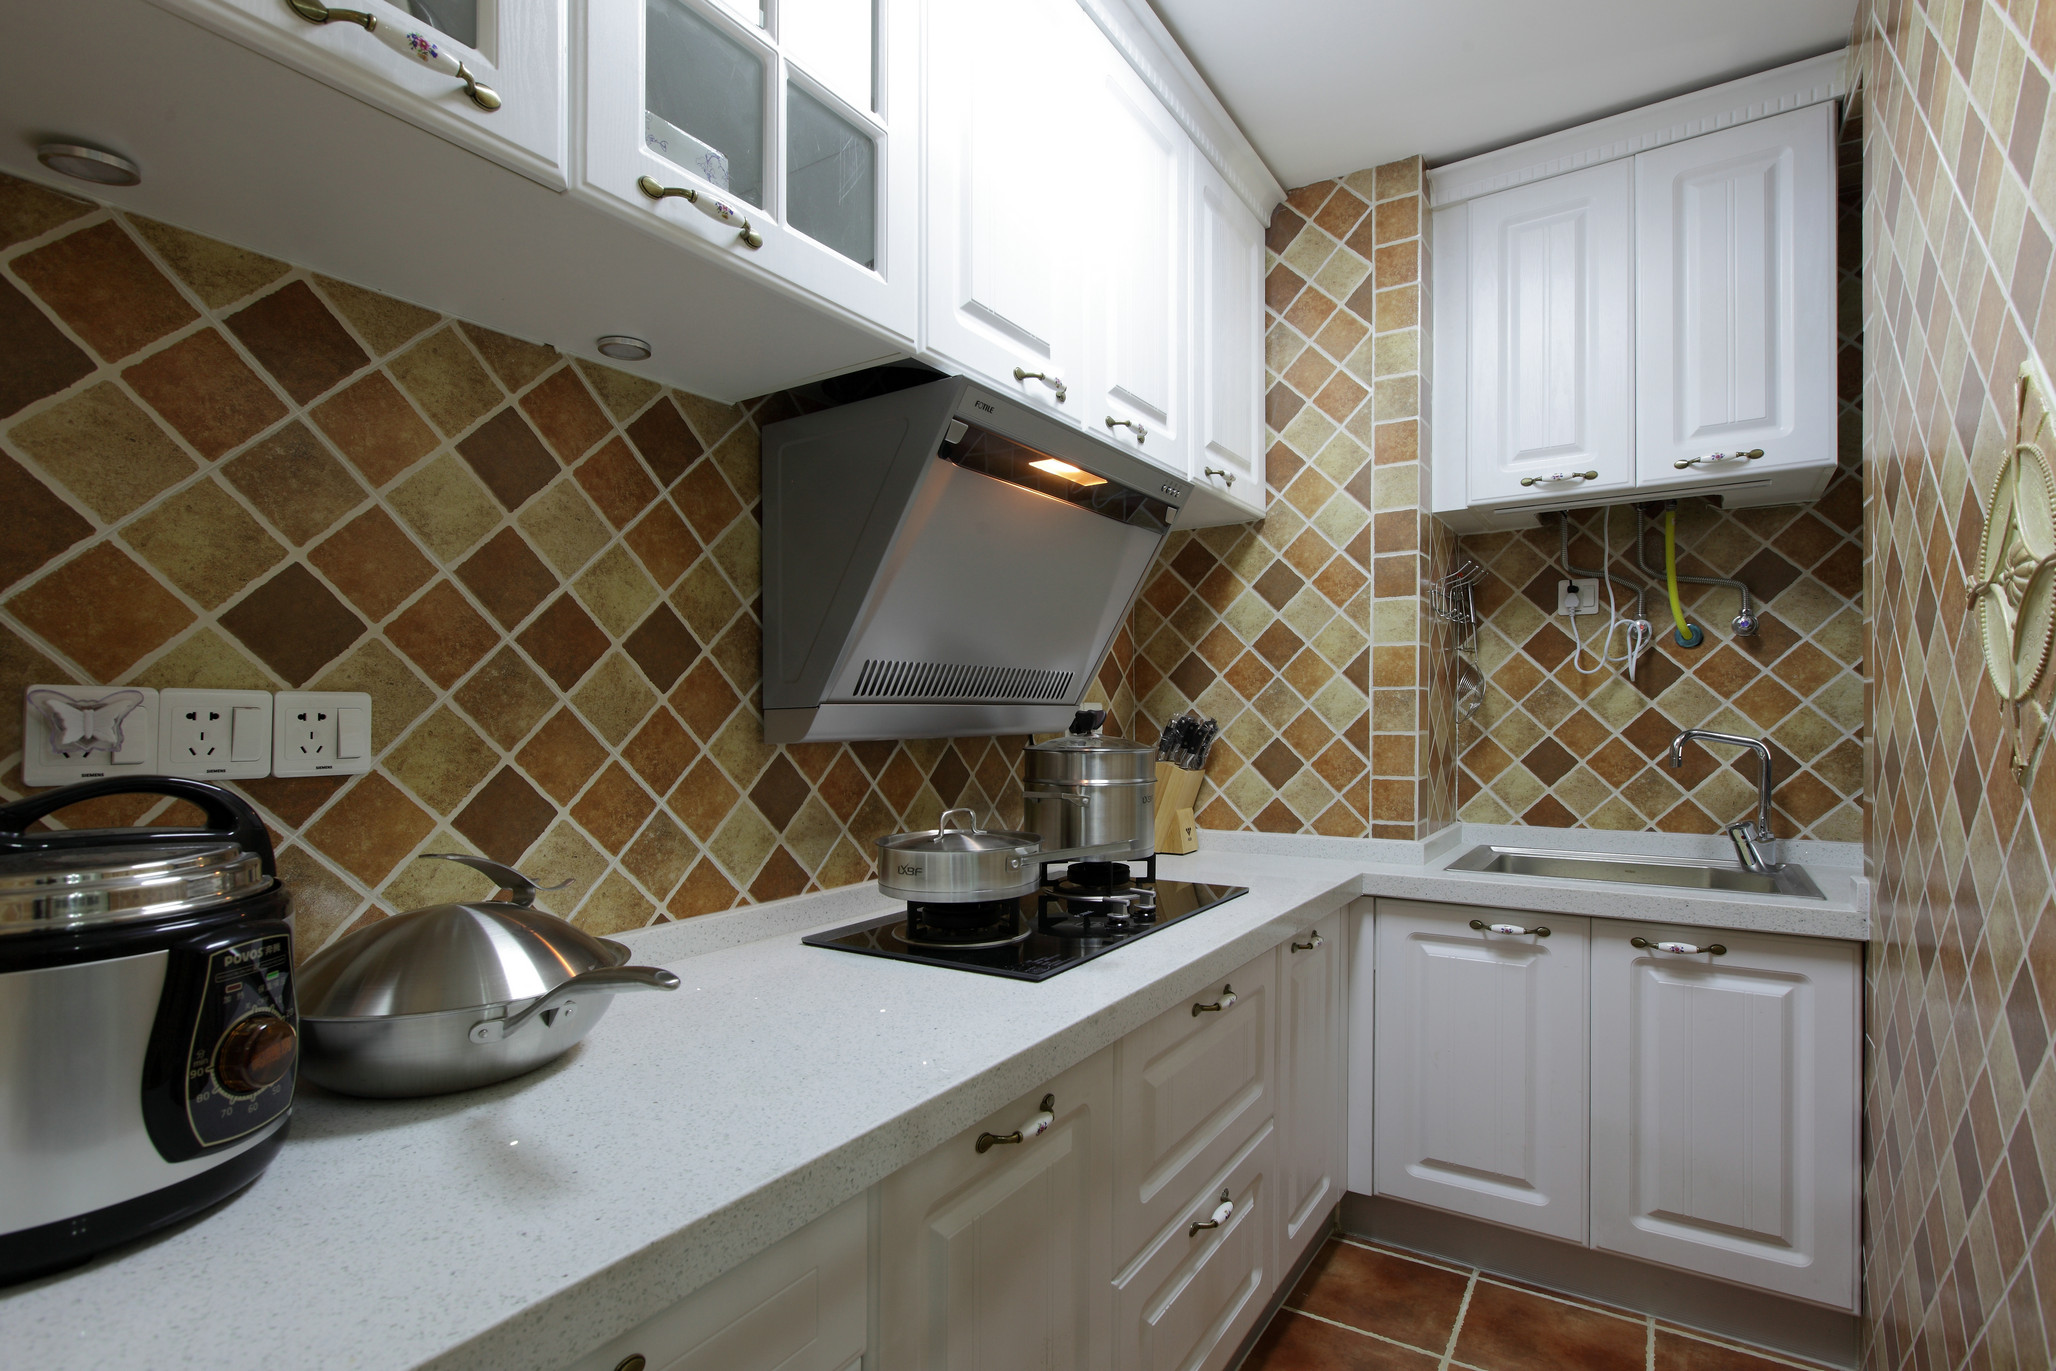 厨房动线恰到好处，菱形花砖增强了视觉张力，强调空间井然的秩序感。